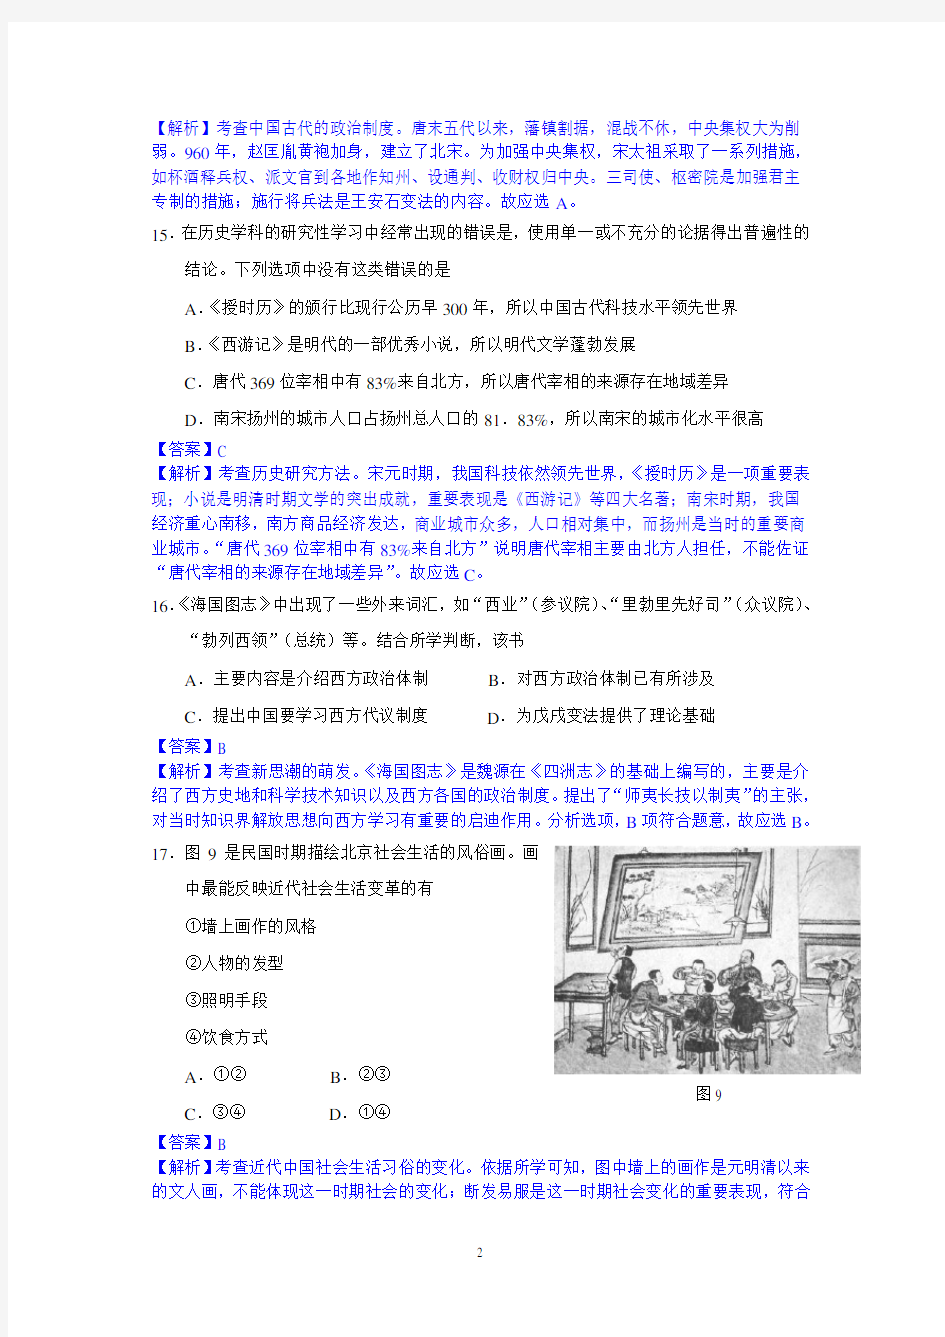 2014年高考真题(北京卷)解析版